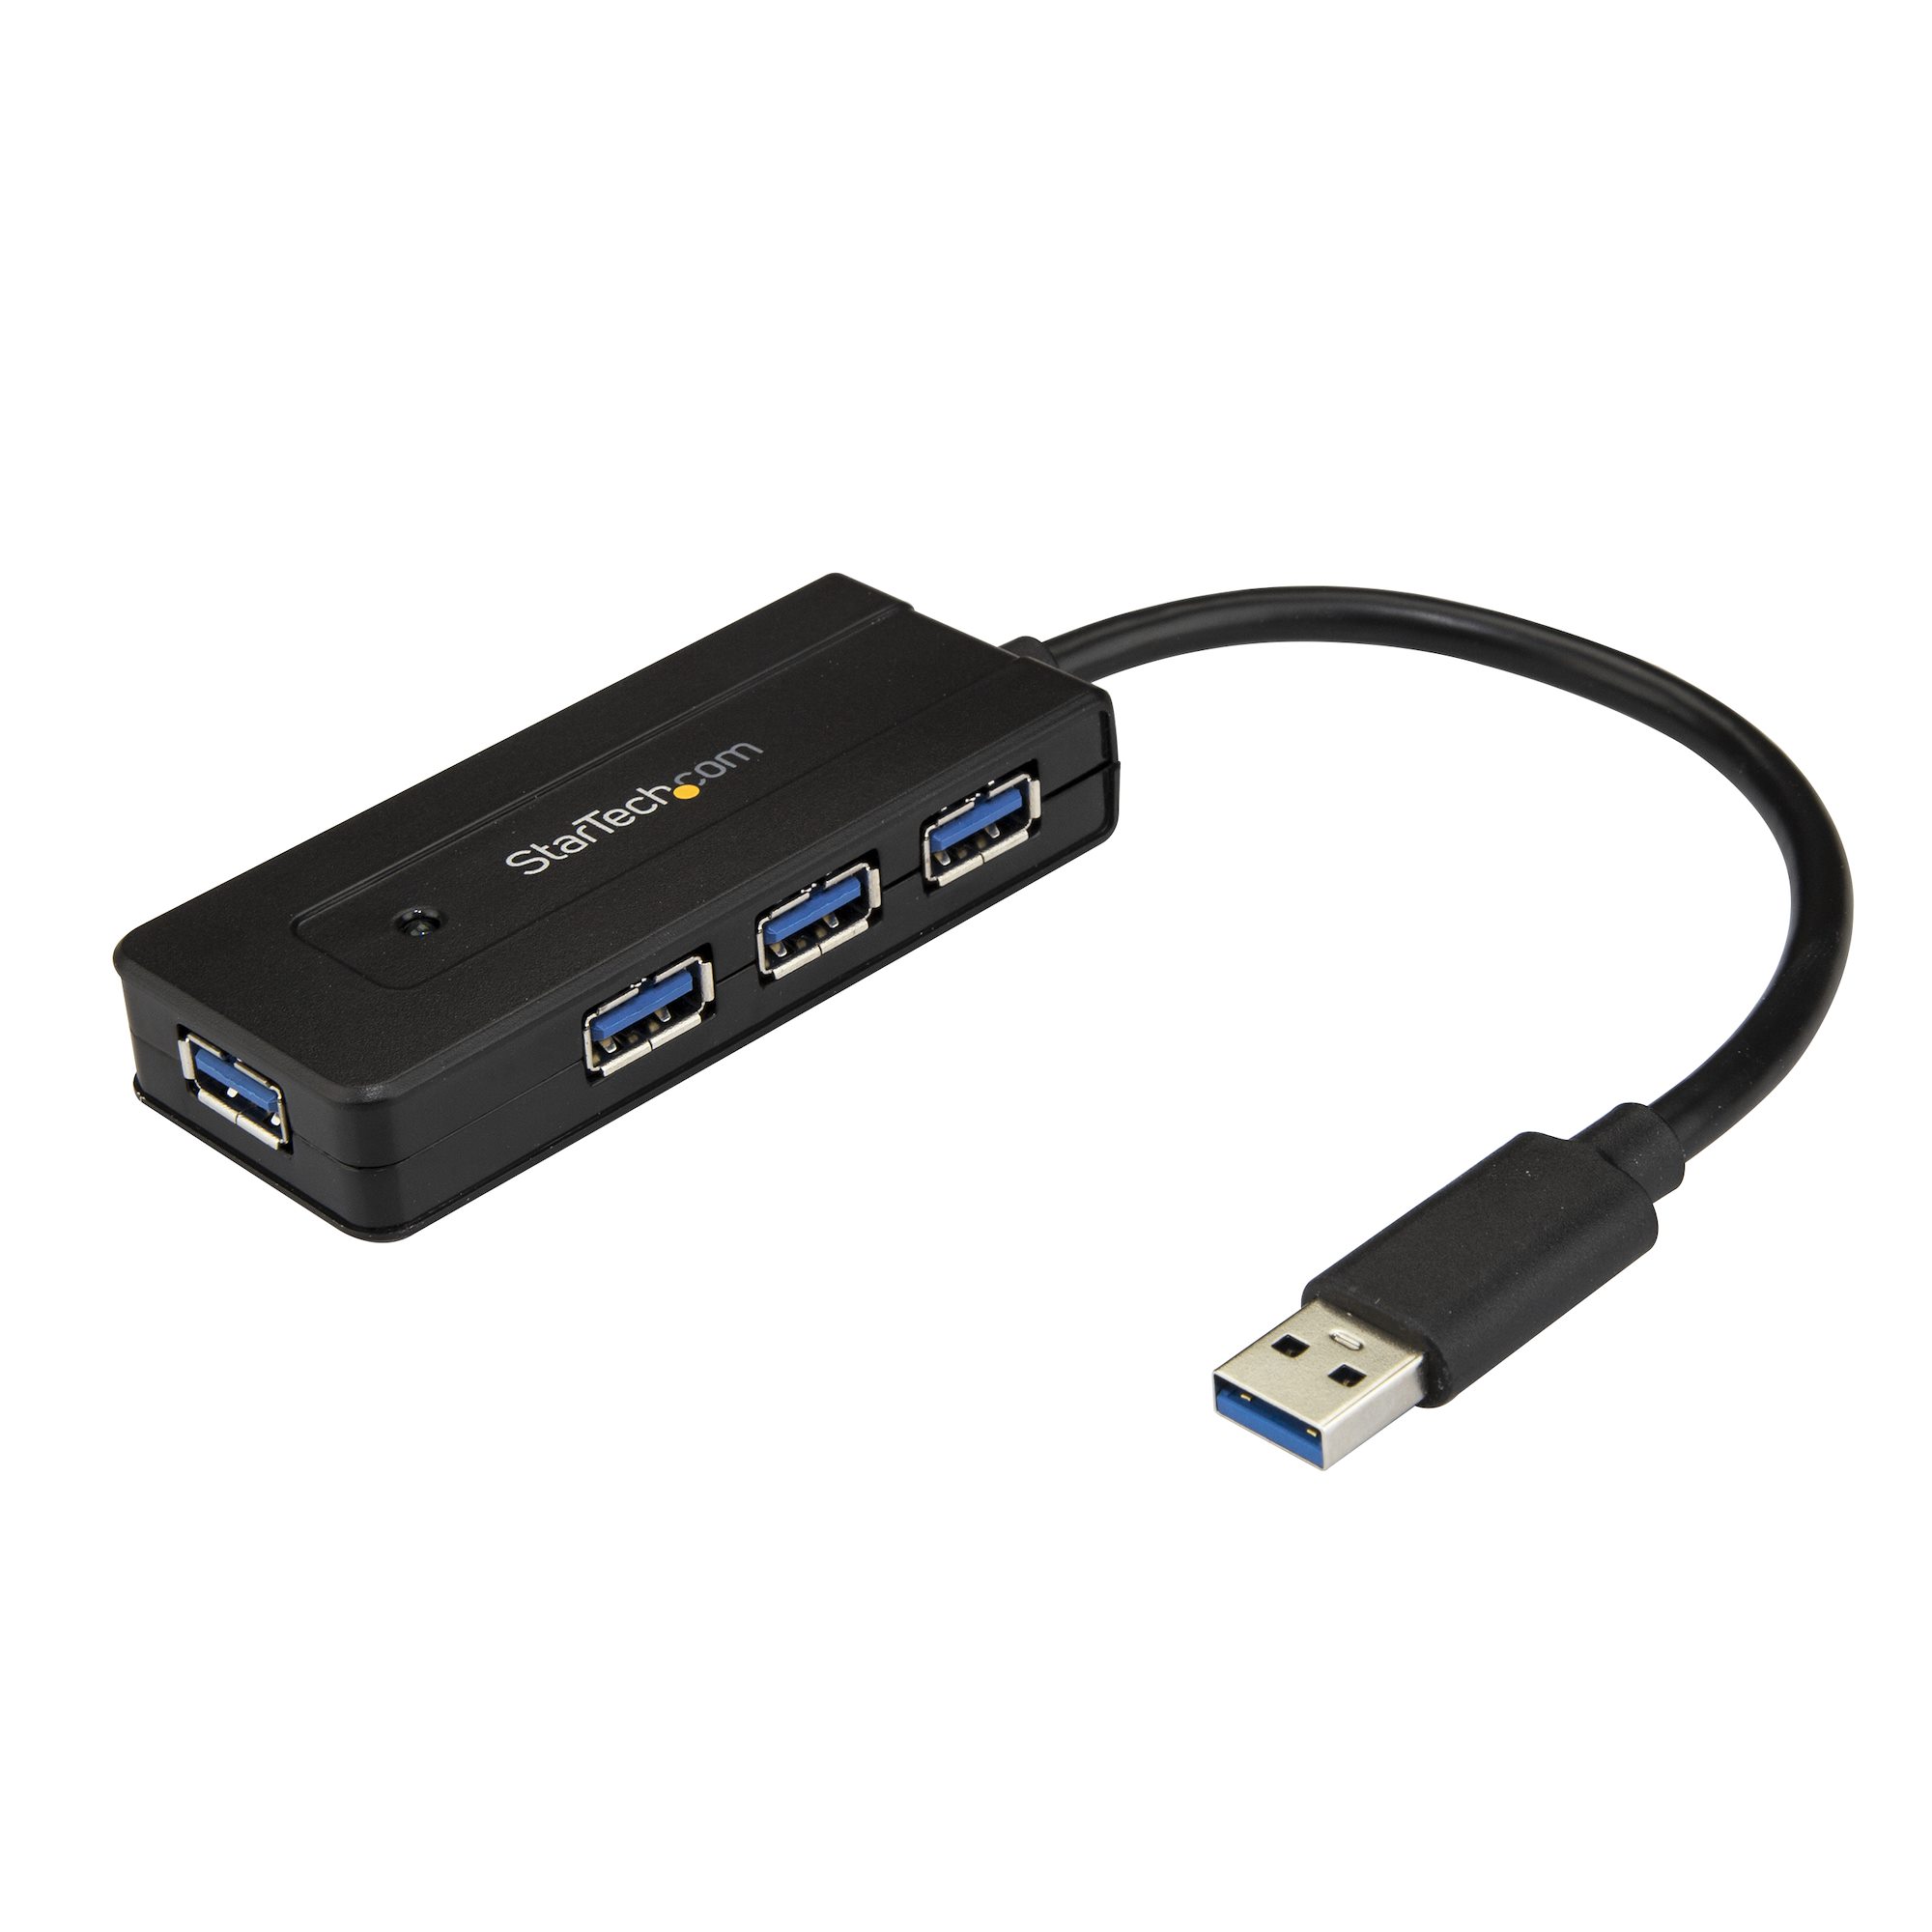 【ST4300MINI】4 PORT USB 3.0 HUB - 5GBPS - MIN